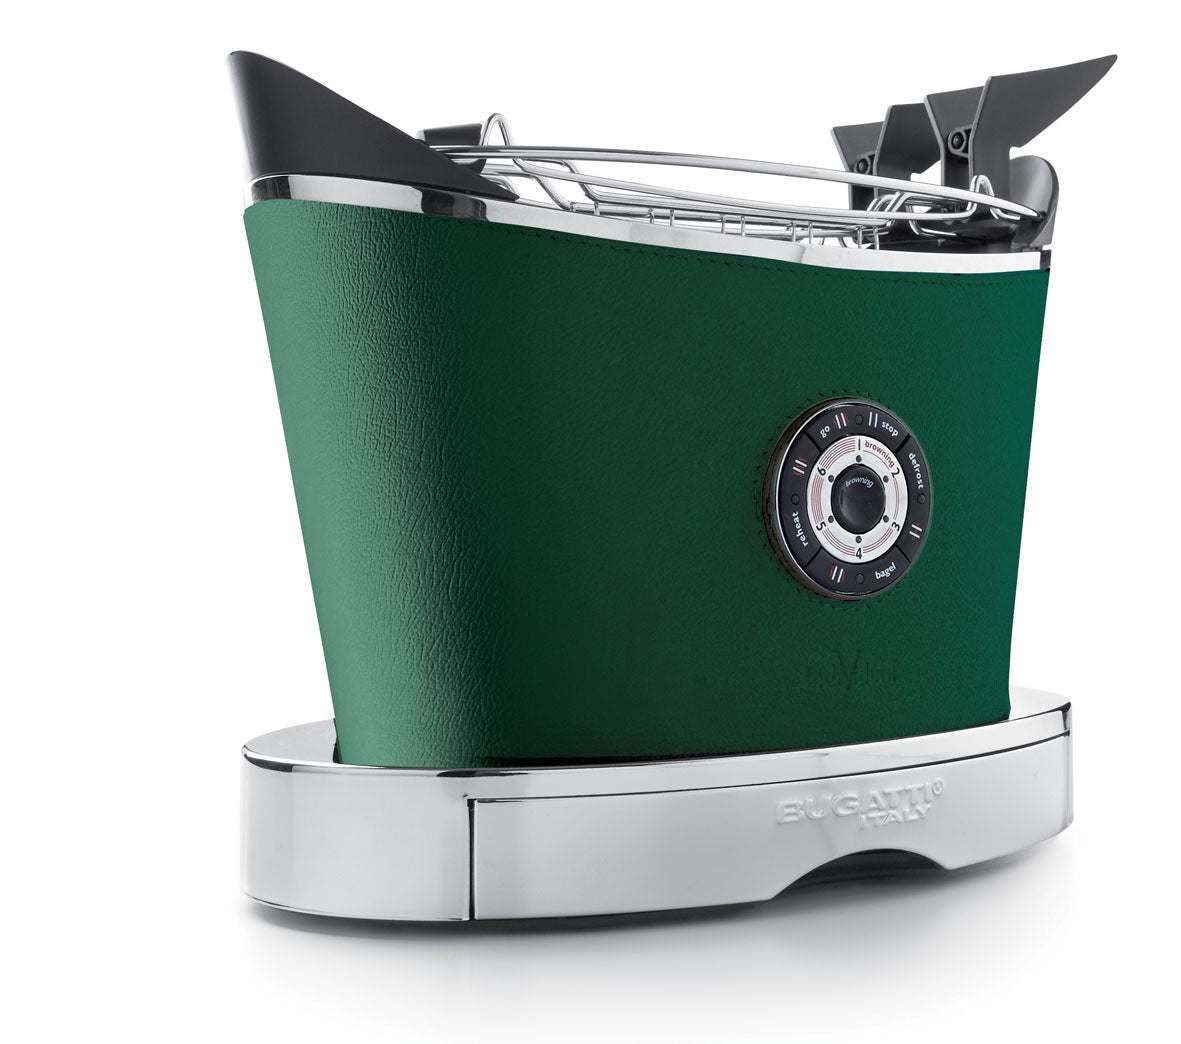 BUGATTI Volo elektrischer Toaster aus Stahl mit grüner Lederpolsterung